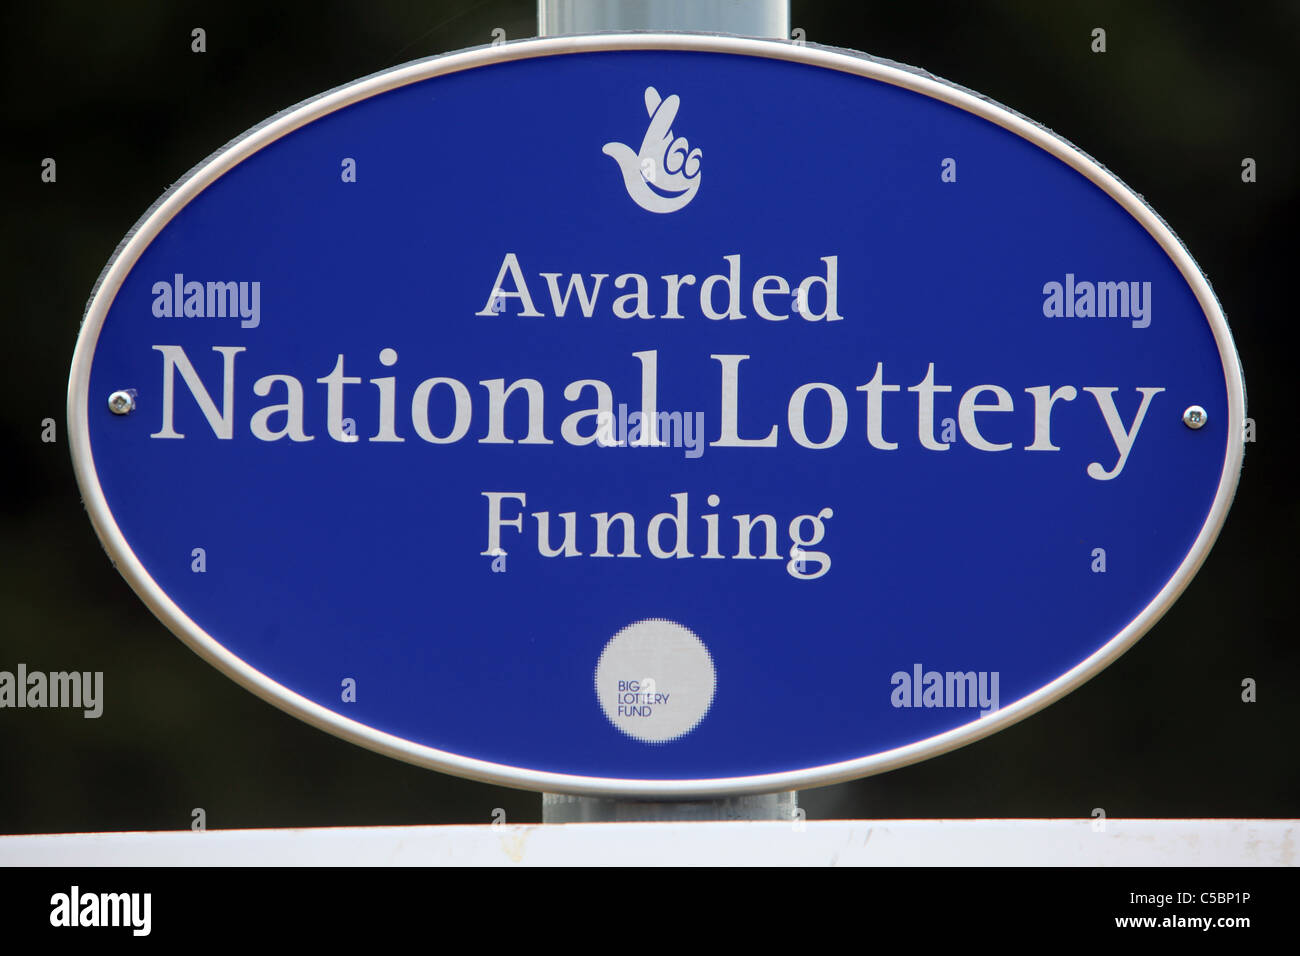 National Lottery Awarded Funding signage, UK Stock Photo